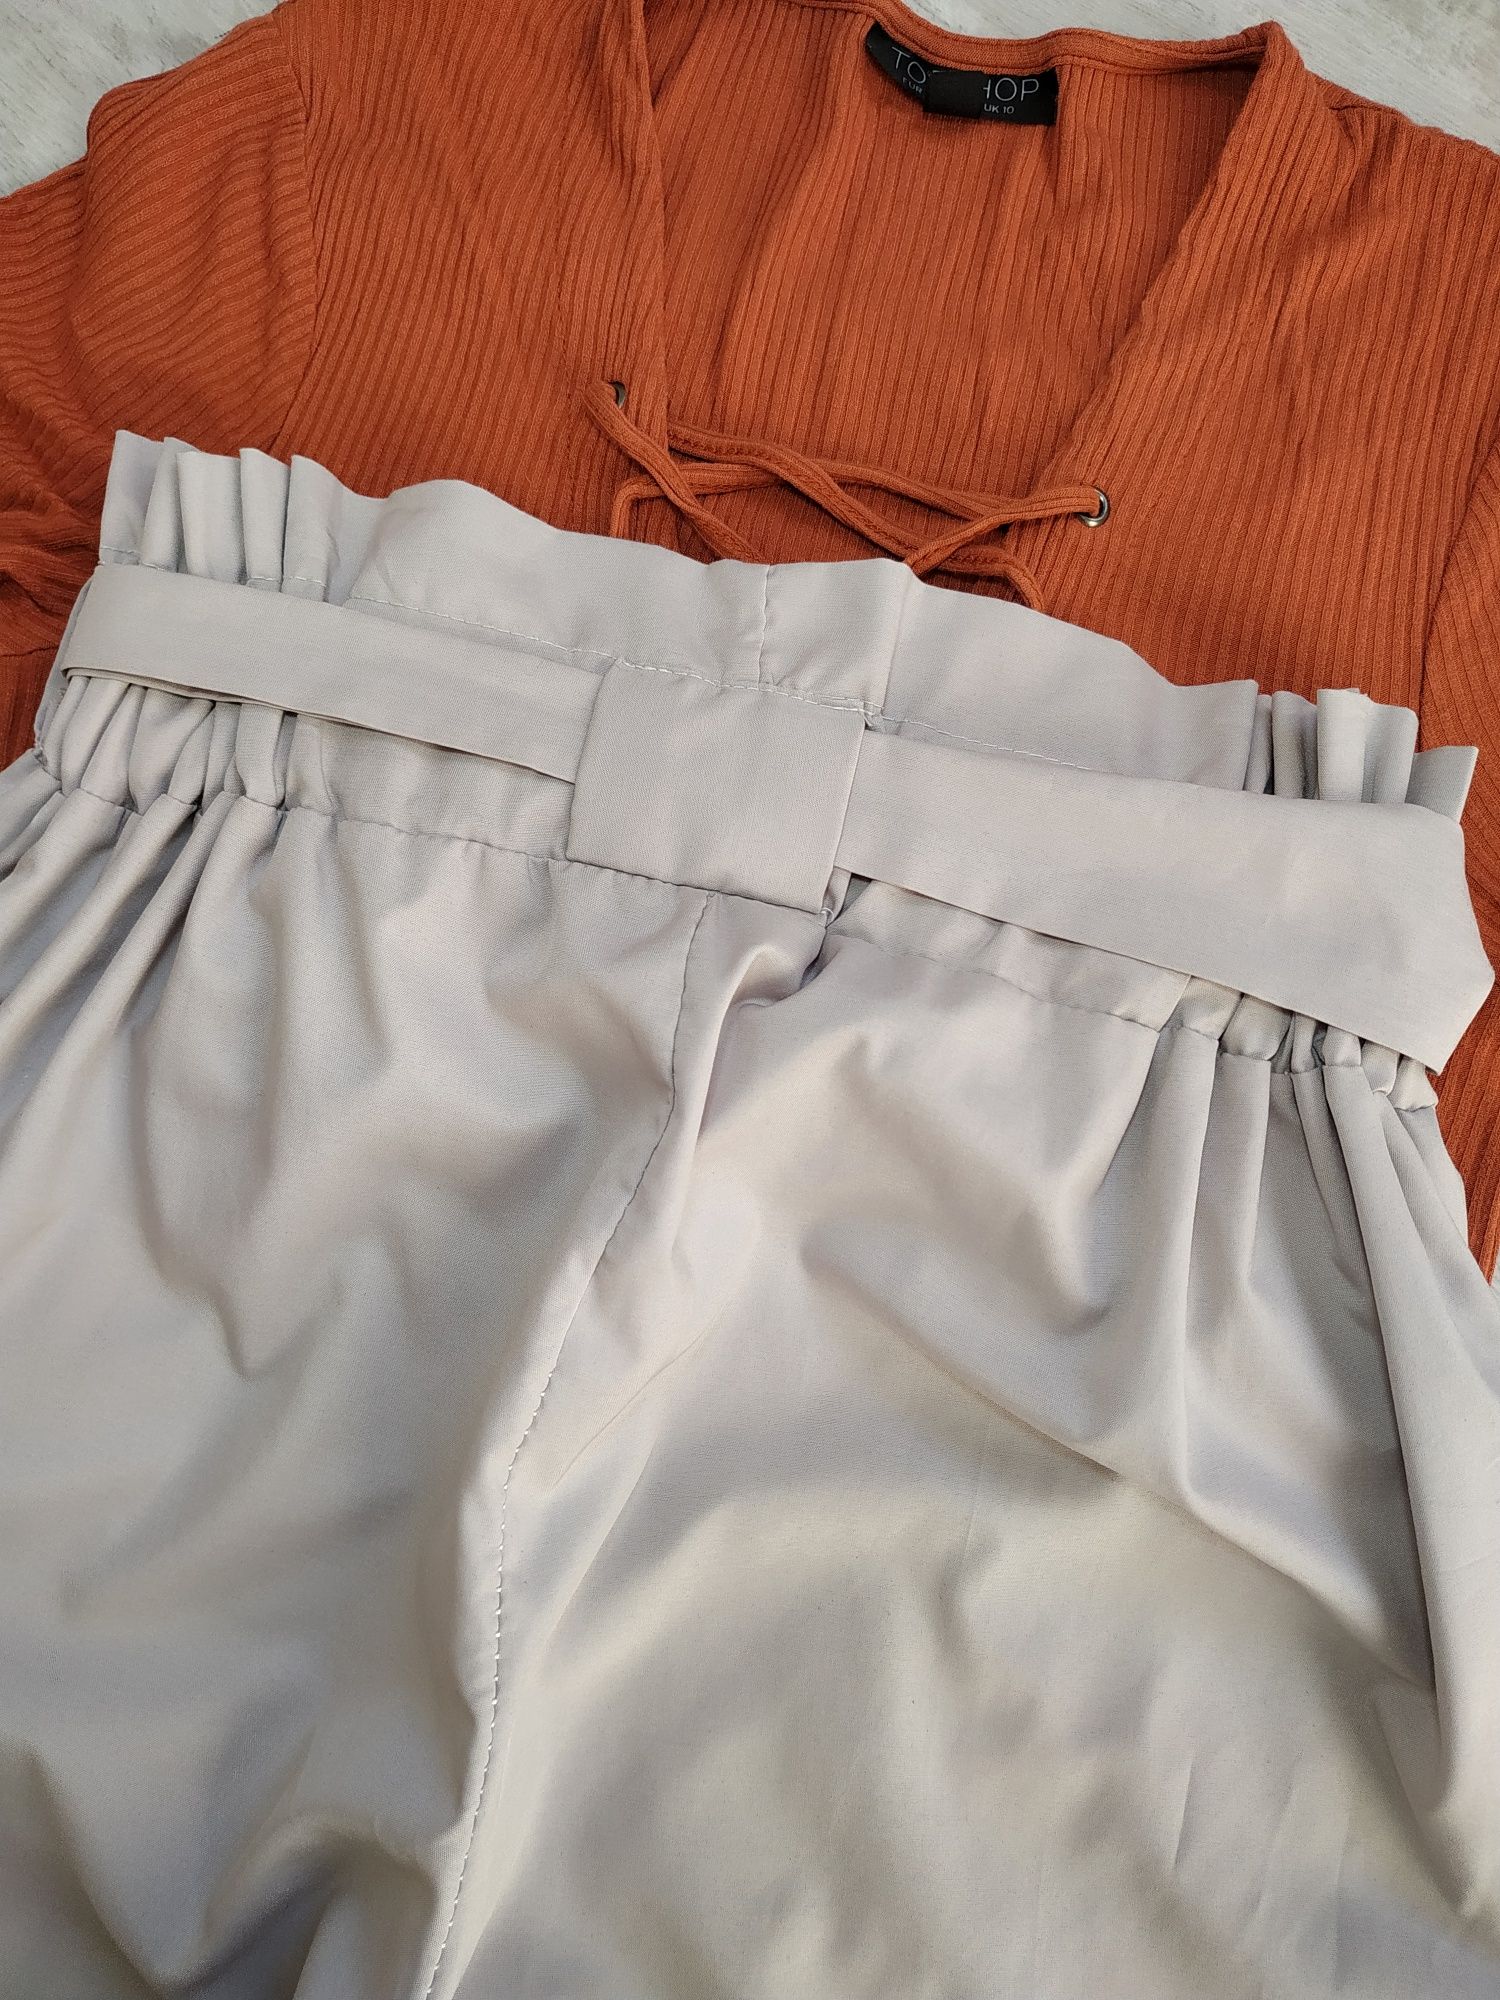 Брюки жіночі 
Розмір: М

Заміри: 
Довжина штанини по внутрішньому шву: